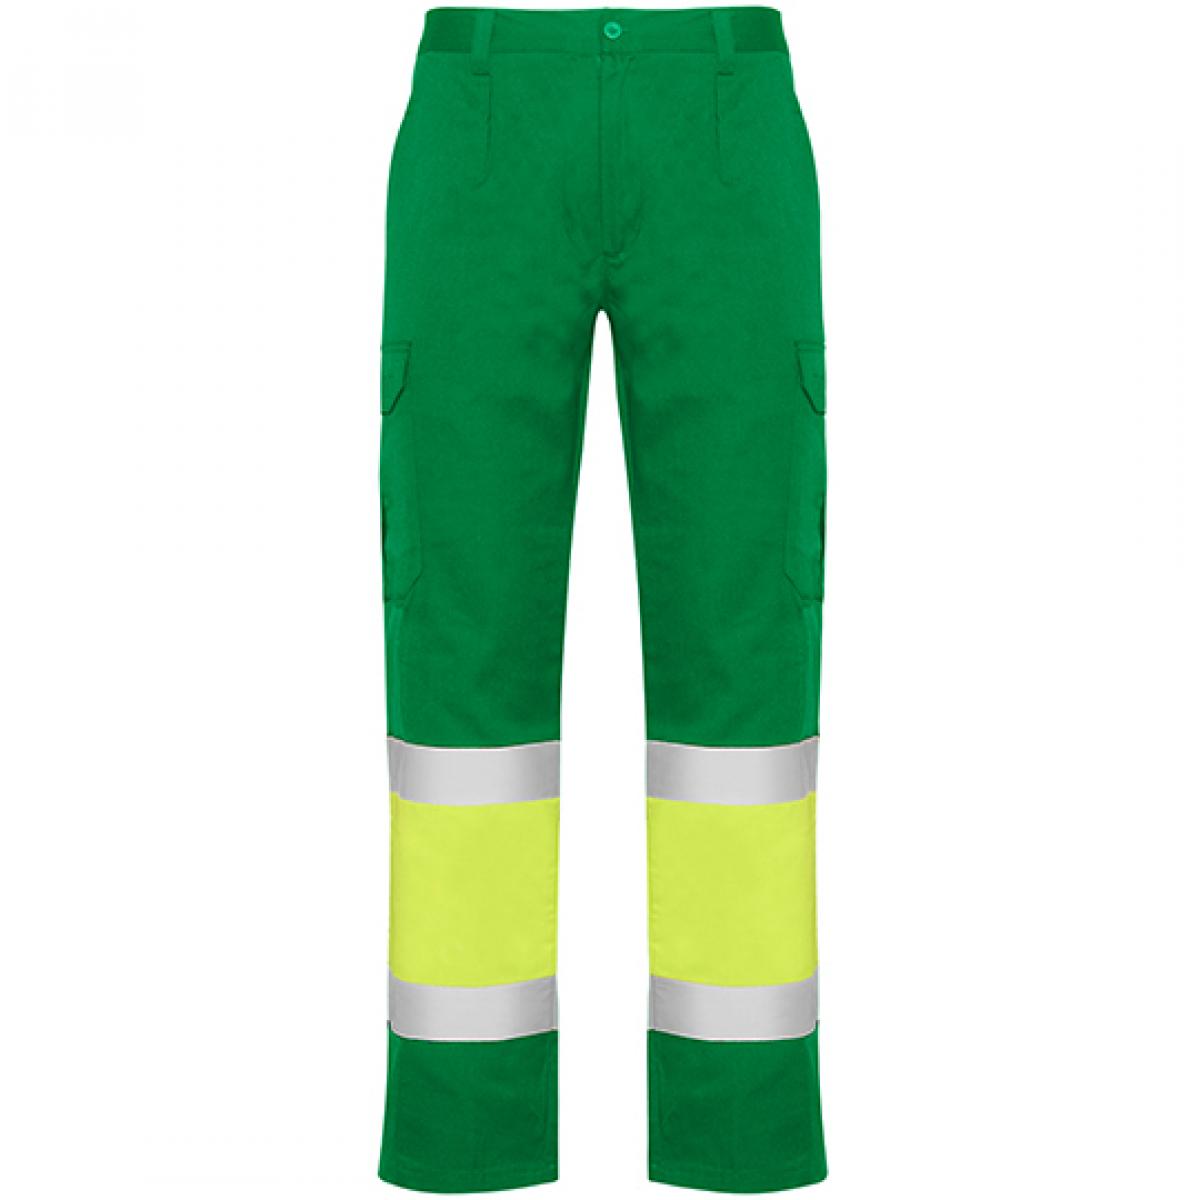 Hersteller: Roly Workwear Herstellernummer: HV9300 Artikelbezeichnung: Naos Hi-Viz Trousers - Arbeitshose mit Reflektionsstreifen Farbe: Garden Green 52/Fluor Yellow 221